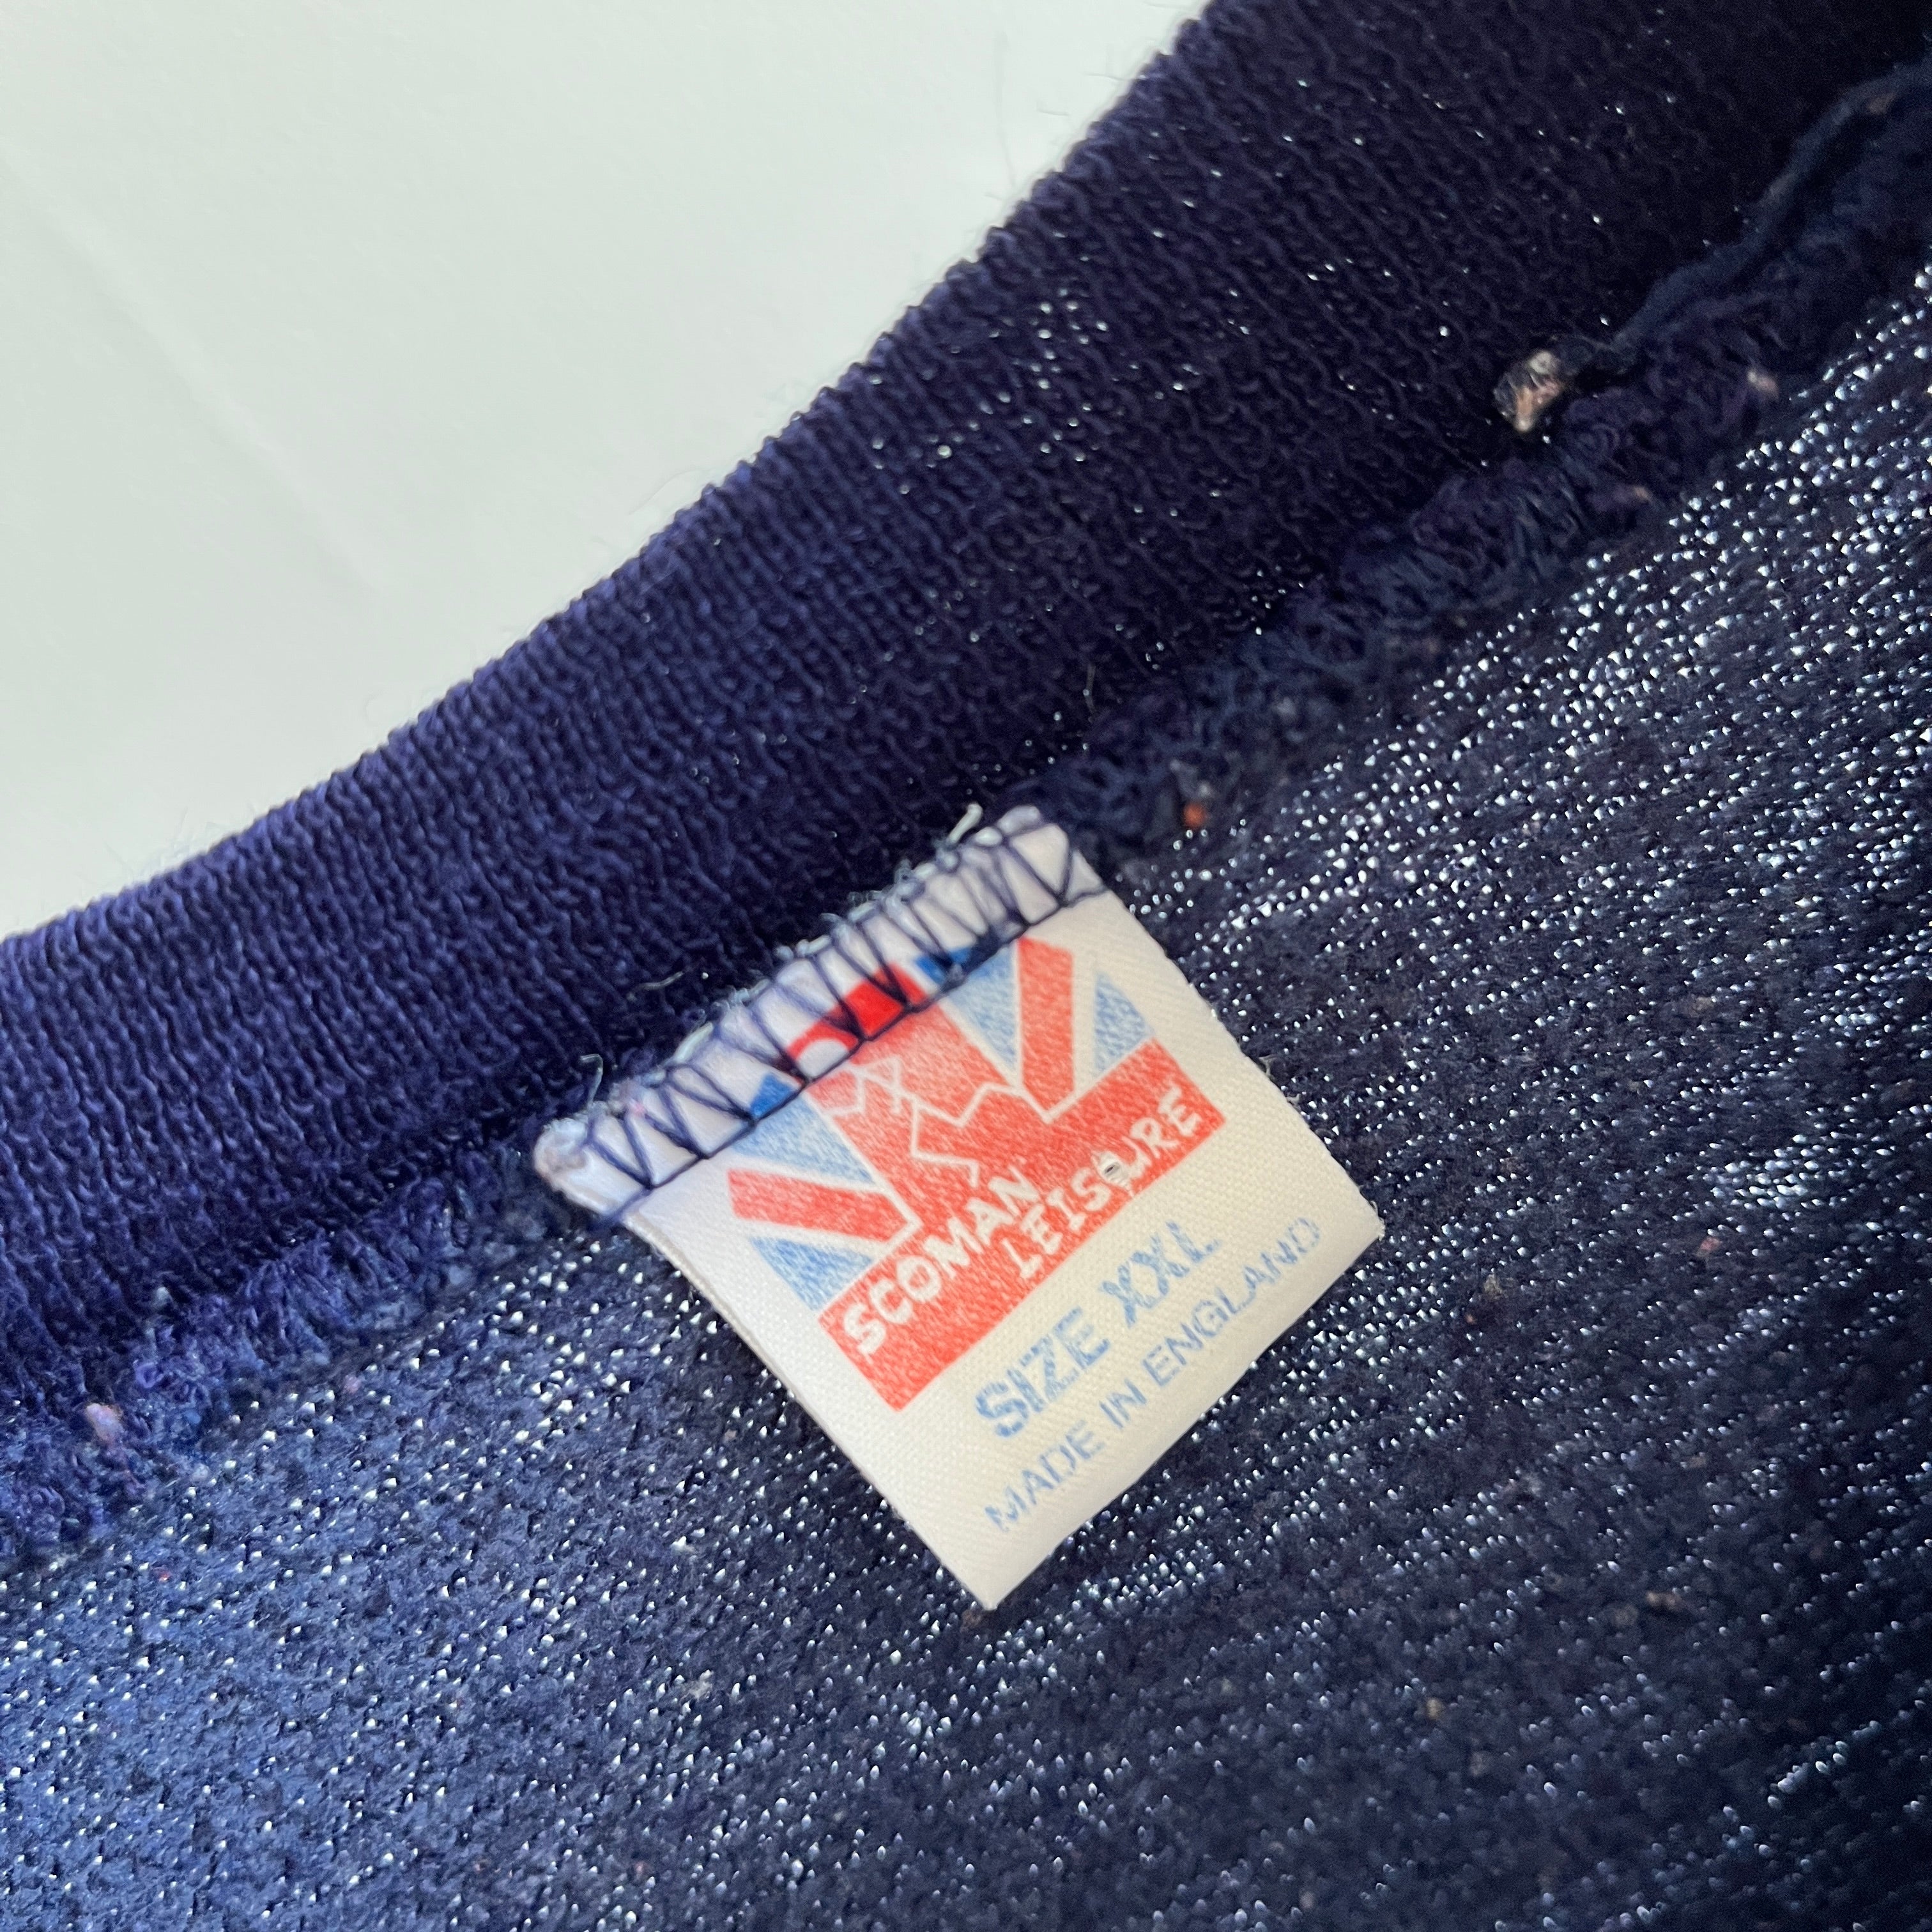 Sweat-shirt touristique Oxford Angleterre des années 1980 avec raccommodage à l'arrière